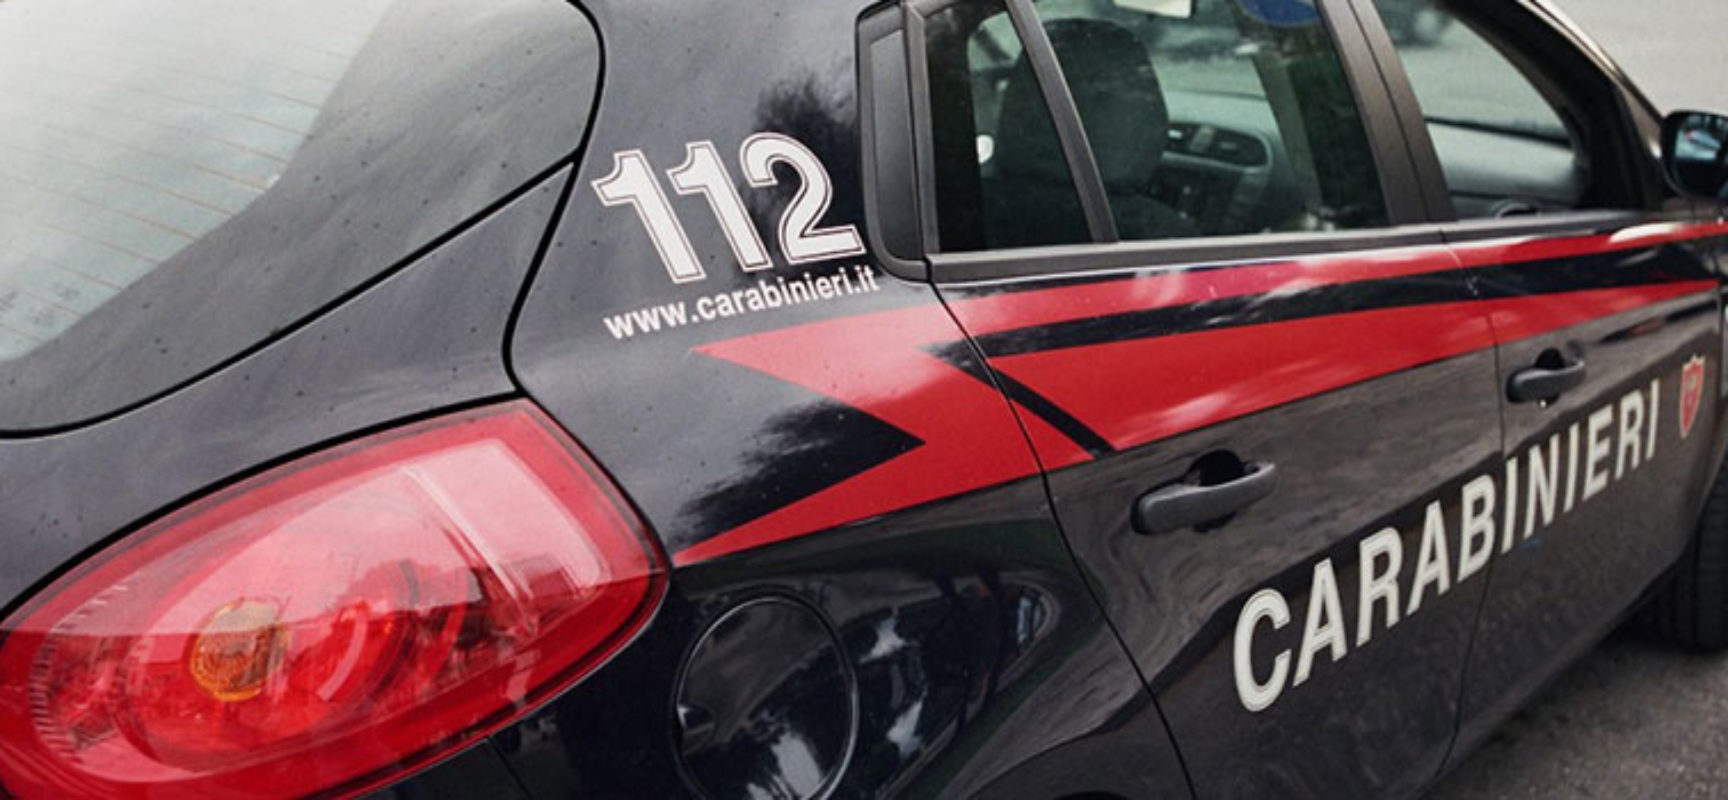 Comando provinciale Carabinieri: pubblicati i dati relativi alle attività operative nel 2022 